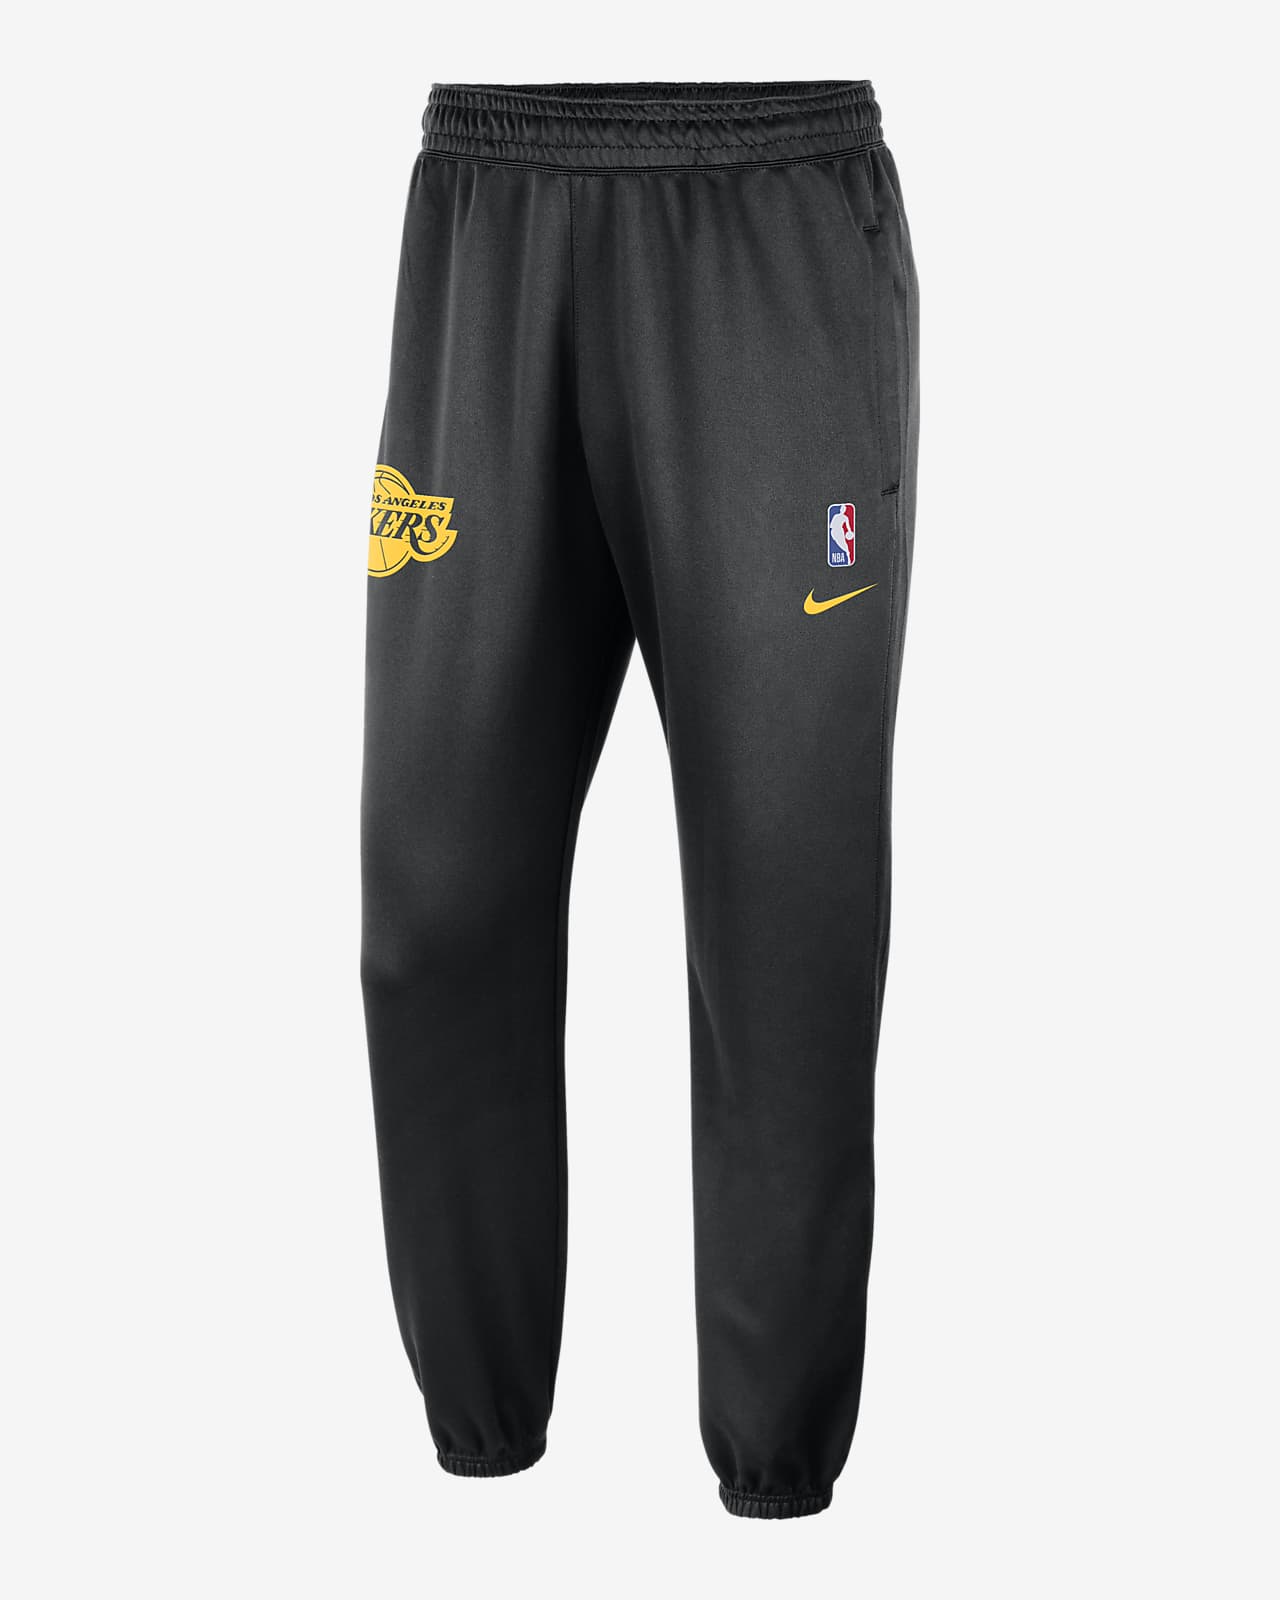 Pantalones Nike Dri-FIT de la NBA para hombres Los Angeles Lakers Spotlight